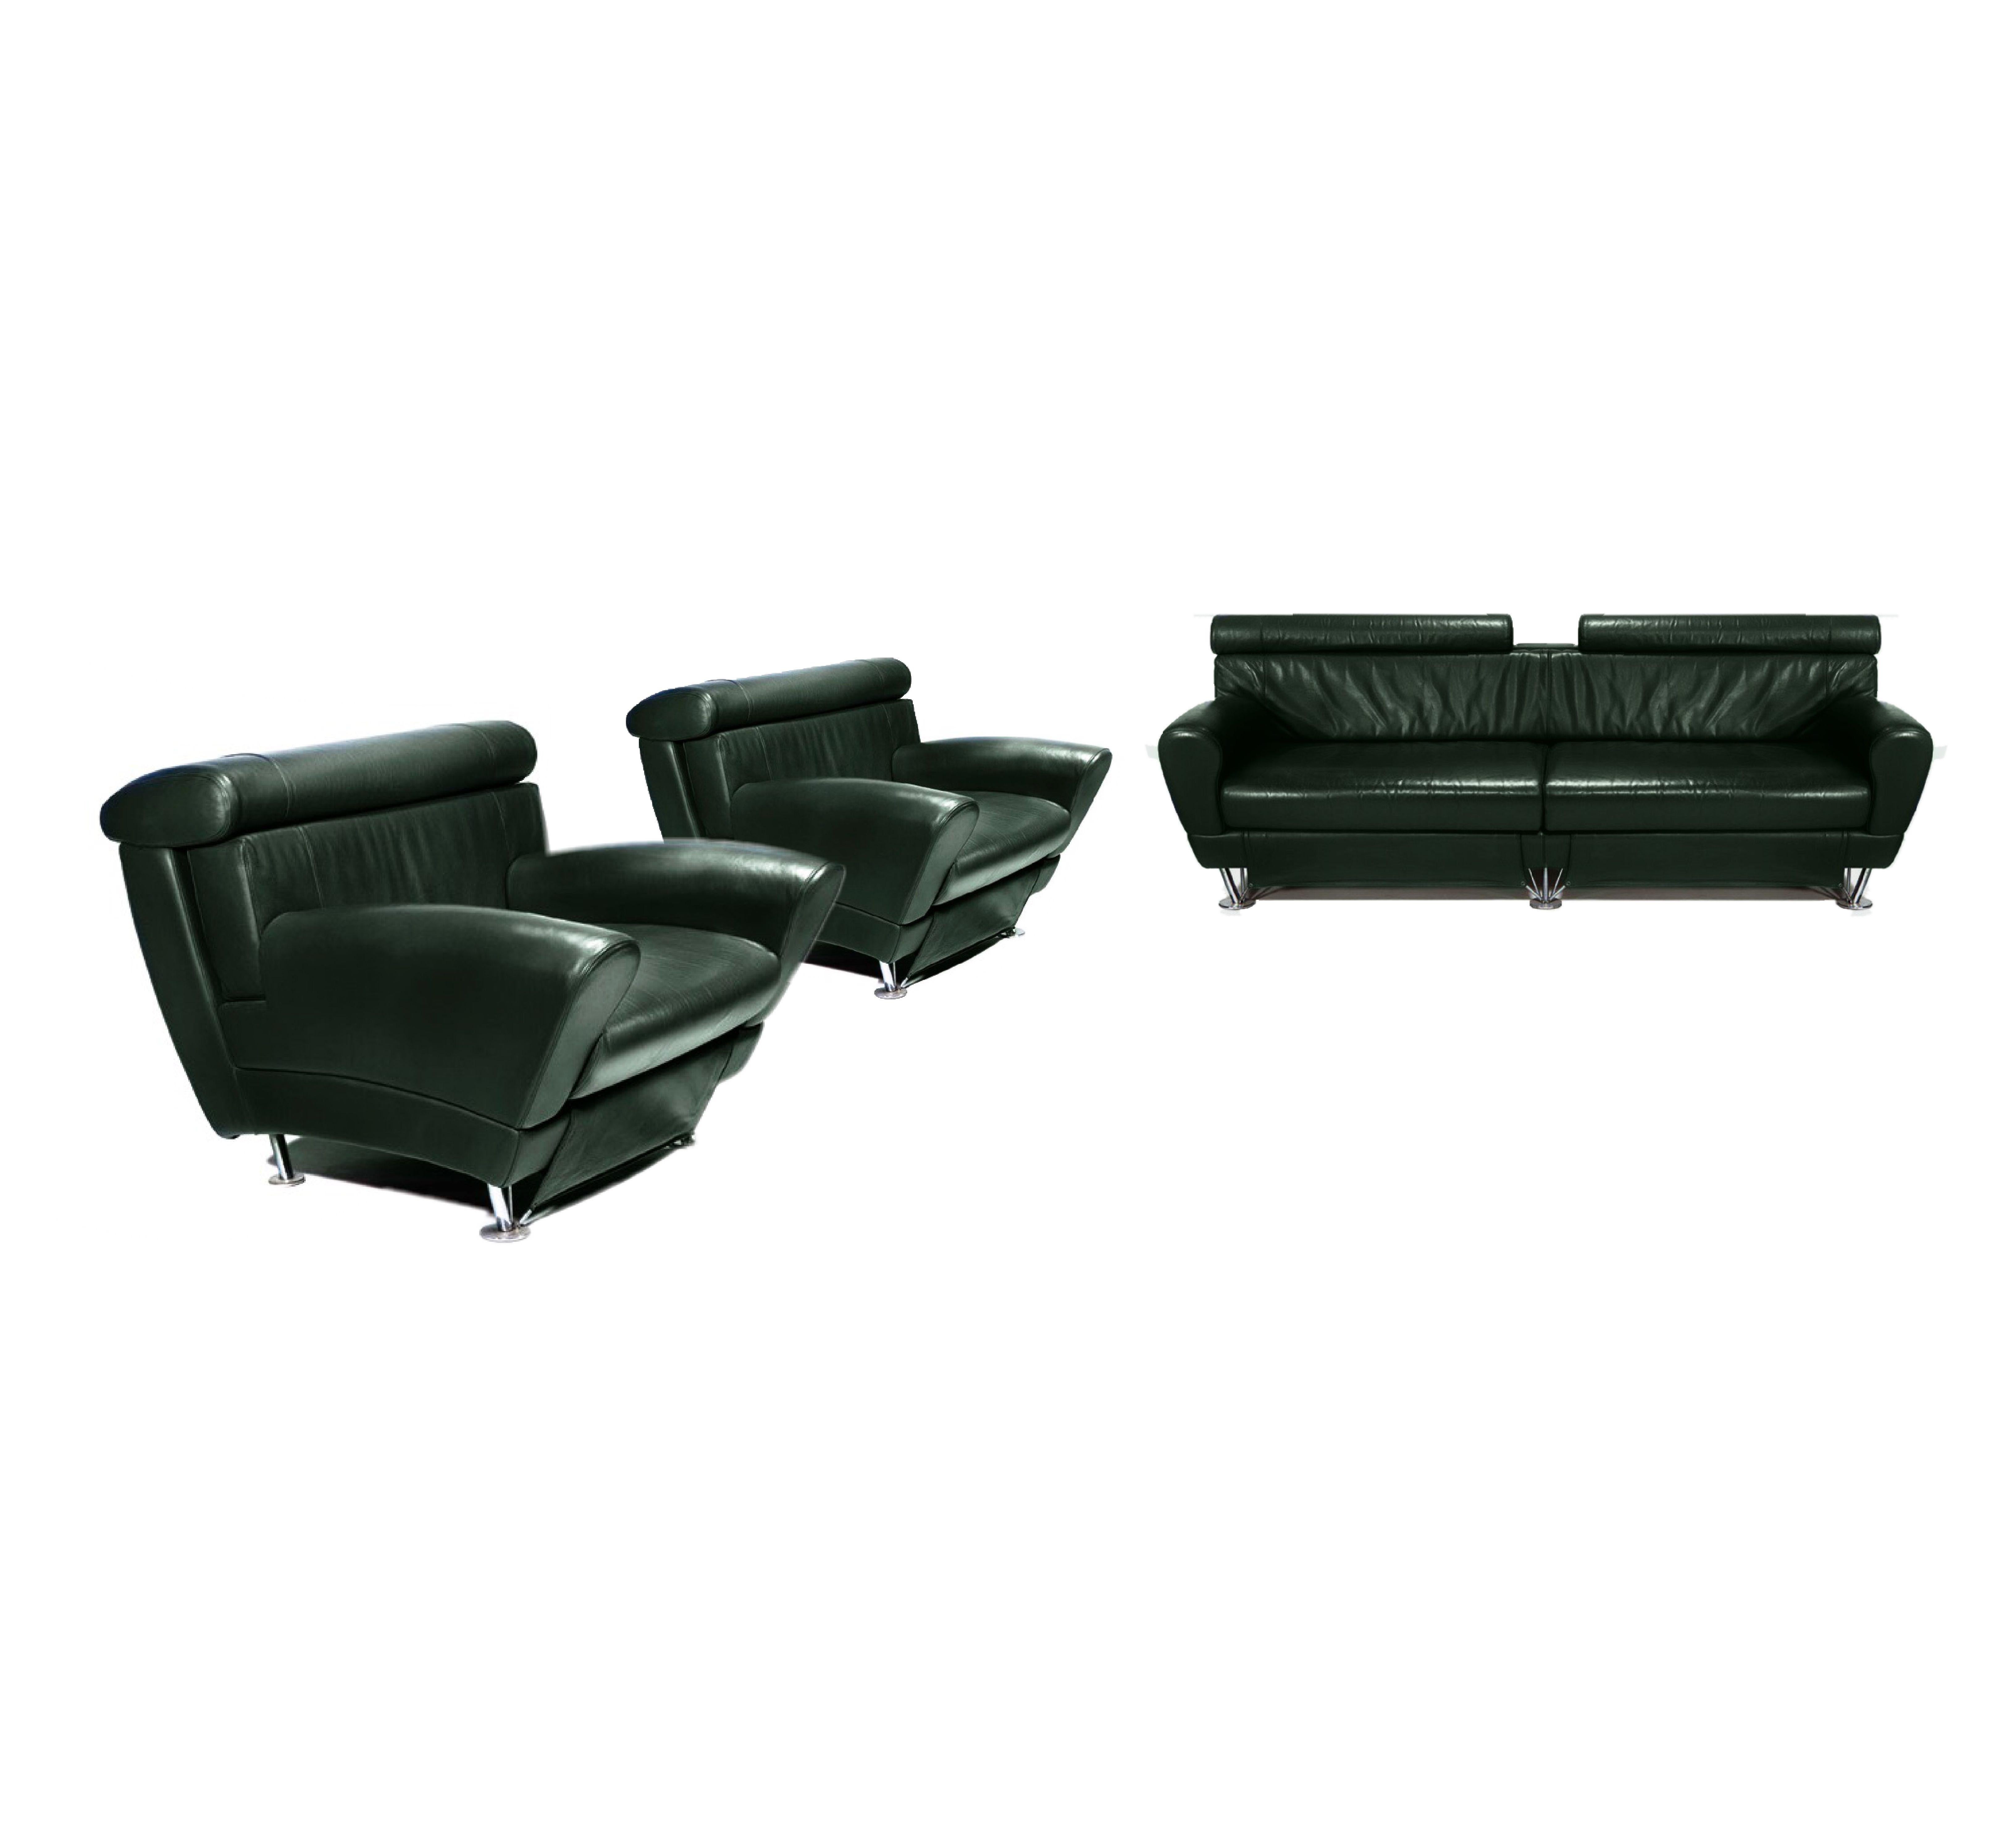 Balzo Forest green leather sofa by Massimo Iosa Ghini for Moroso Italia 1987, three-seat sofa, leather, chromed steel, 83